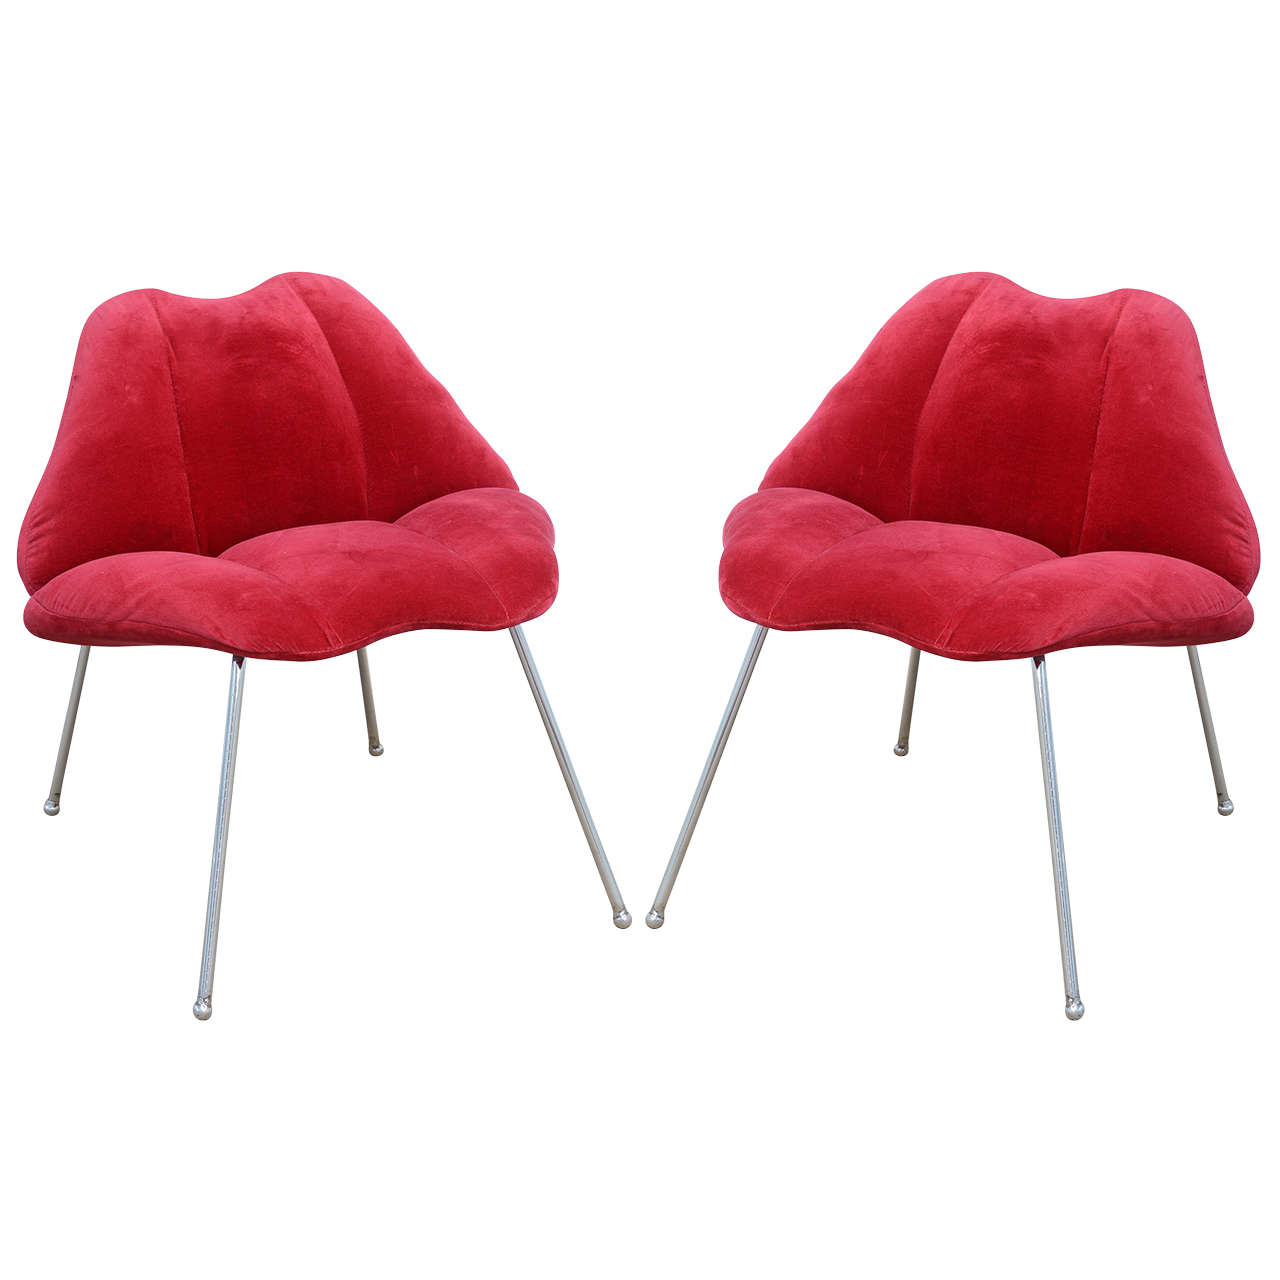 Pair of Modern Lips Pop Fun Chairs